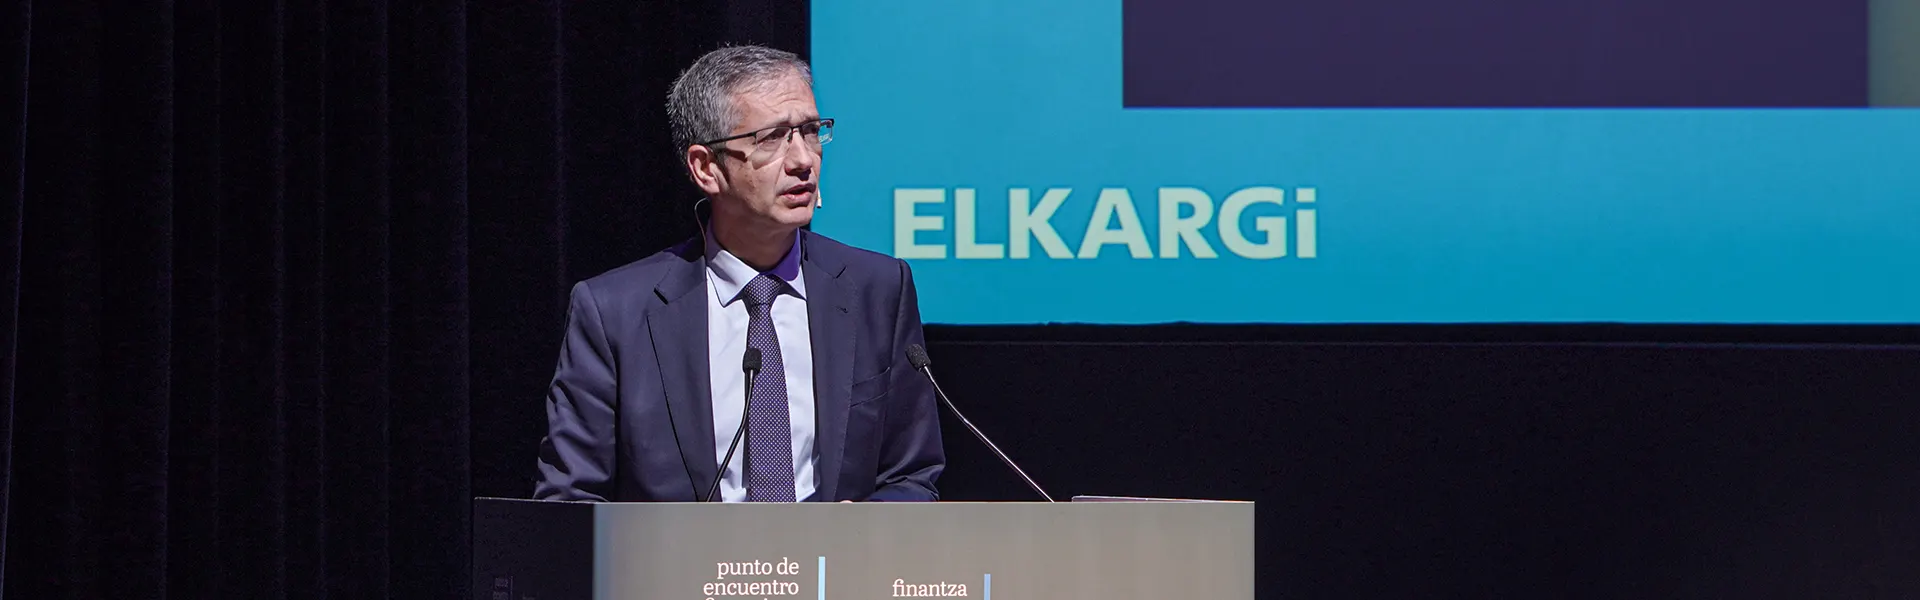 Hernández de Cos participa en el Foro Finanza de Elkargi sobre Ciber riesgo y sus implicaciones en el sector financiero ultimas noticias cesgar